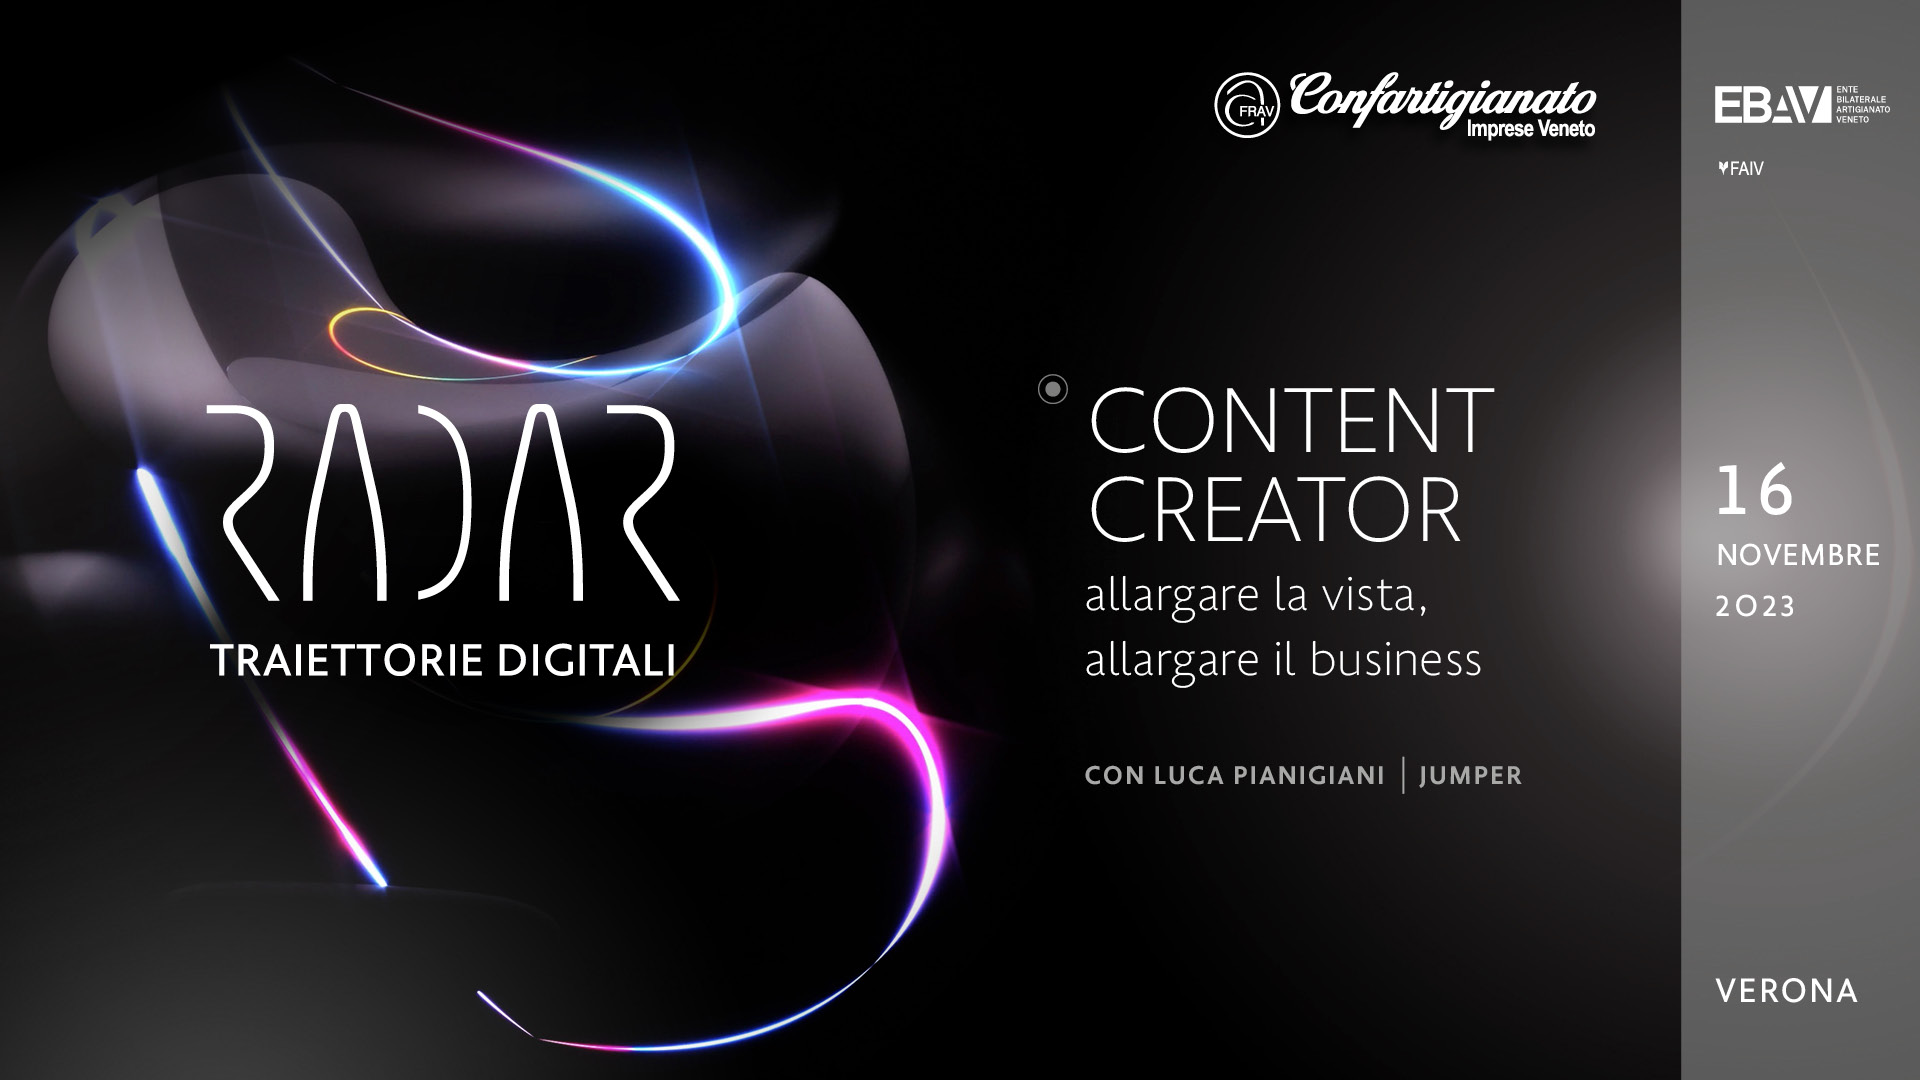 EVENTO – Radar, Traiettorie Digitali: 16 novembre, ultimo appuntamento a Verona con "Content Creators: allargare la vista, allargare il business", per i professionisti della comunicazione